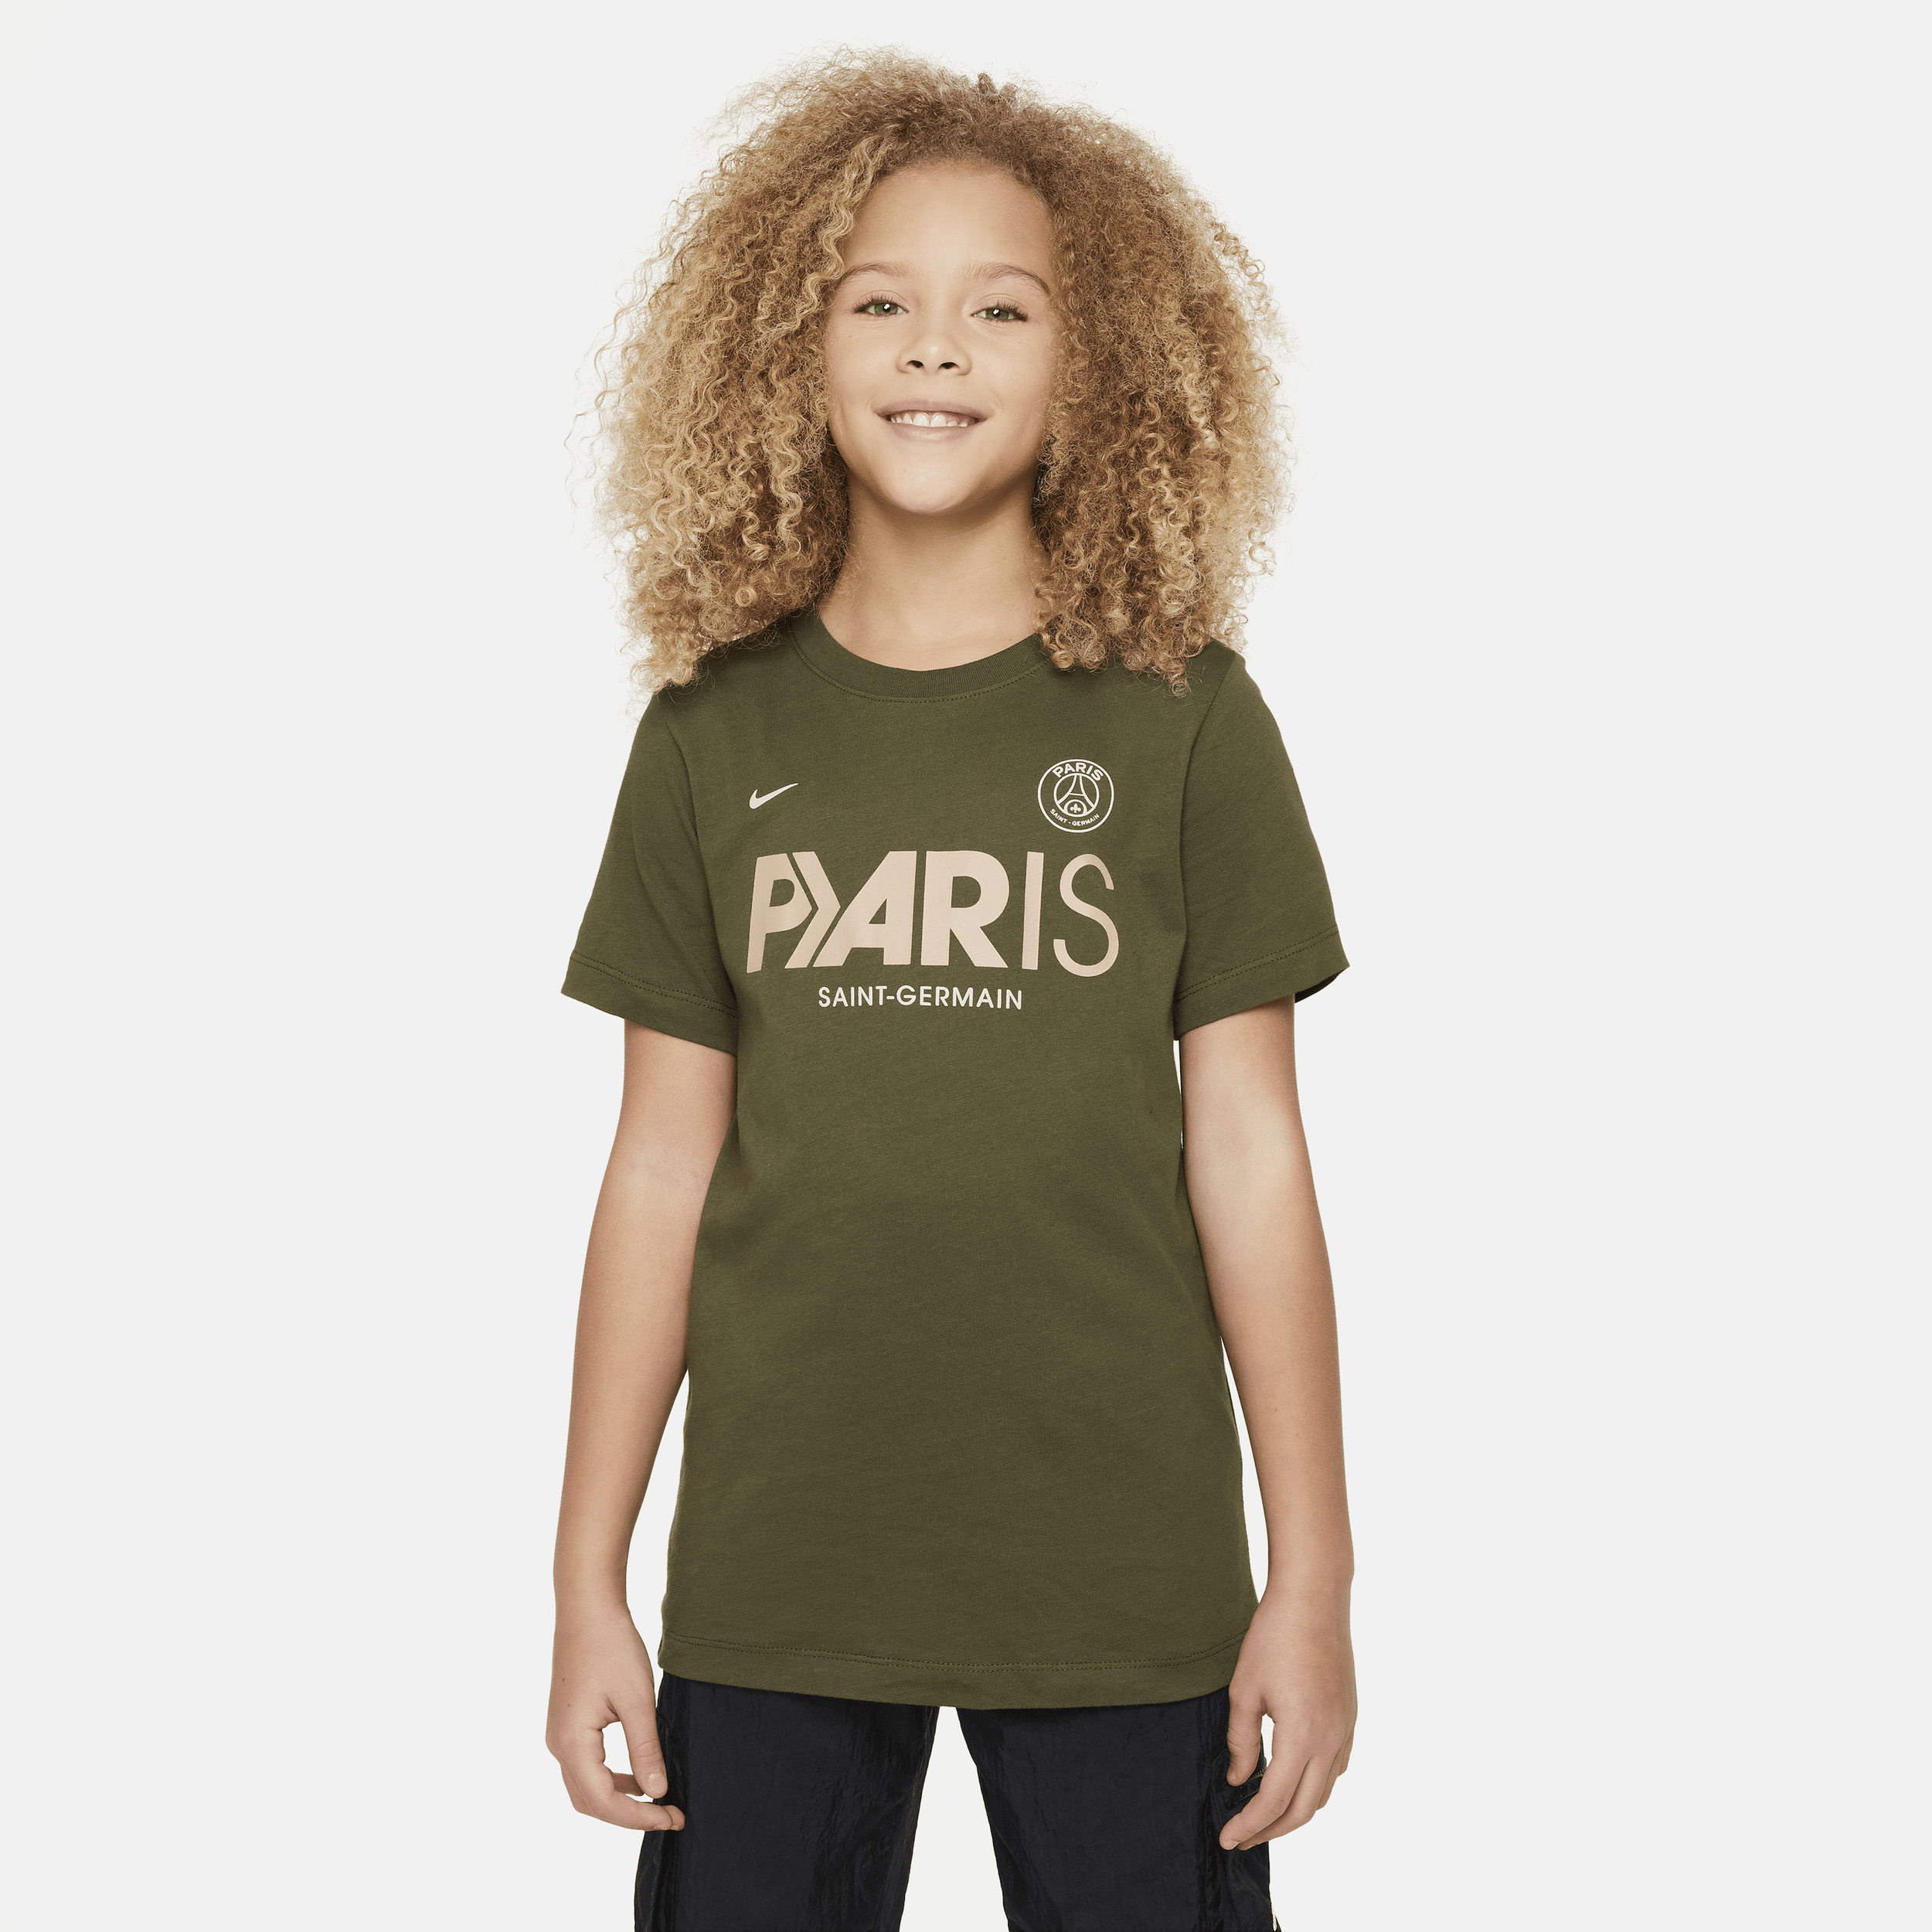 Paris Saint-Germain Mercurial Nike voetbalshirt voor kids - Groen